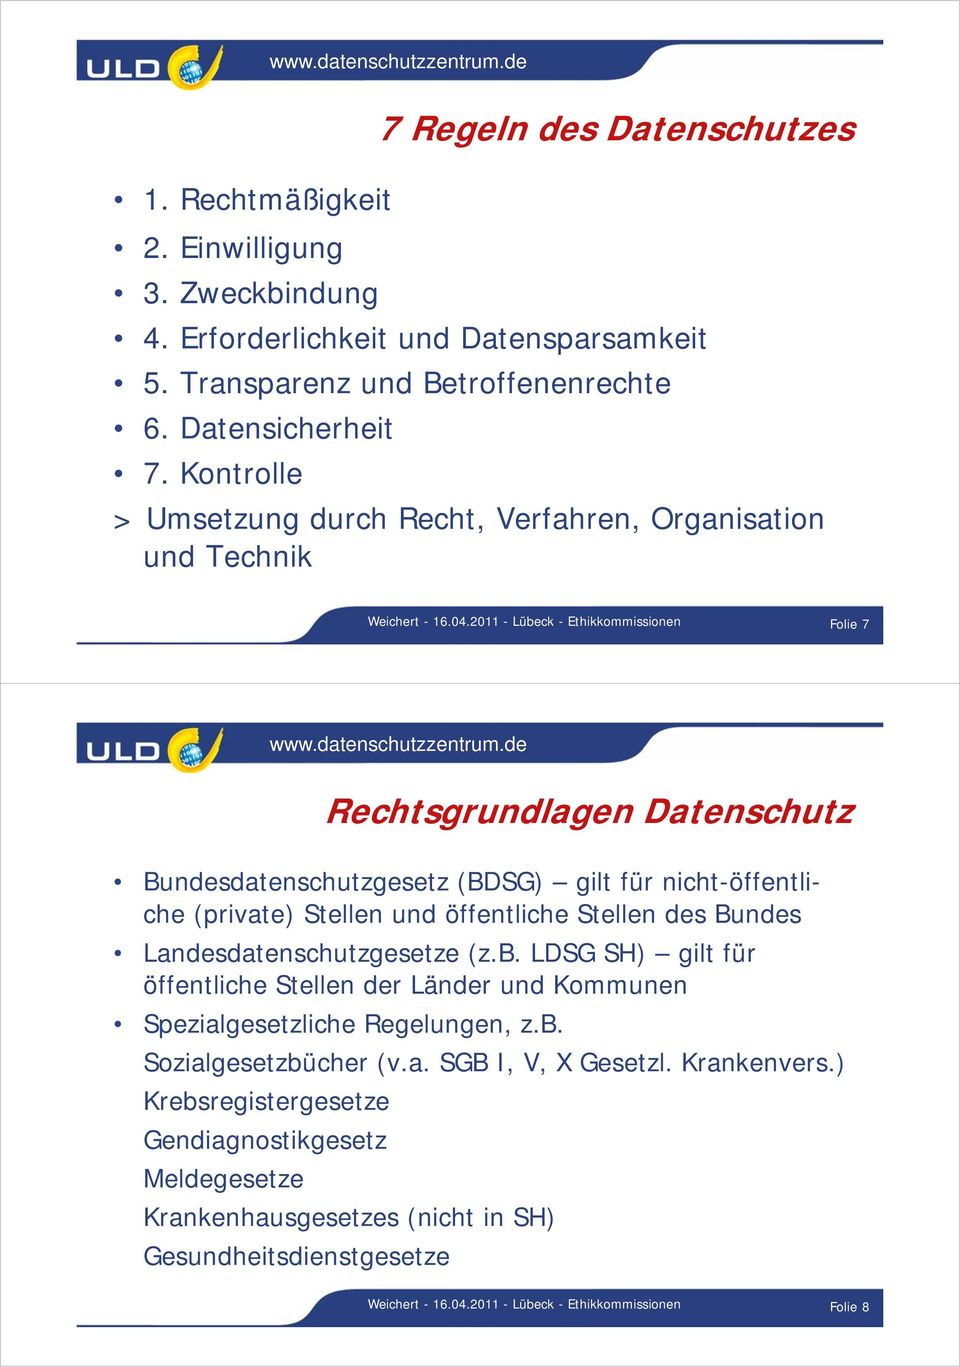 2011 - Lübeck - Ethikkommissionen Folie 7 Rechtsgrundlagen Datenschutz Bundesdatenschutzgesetz (BDSG) gilt für nicht-öffentliche (private) Stellen und öffentliche Stellen des Bundes